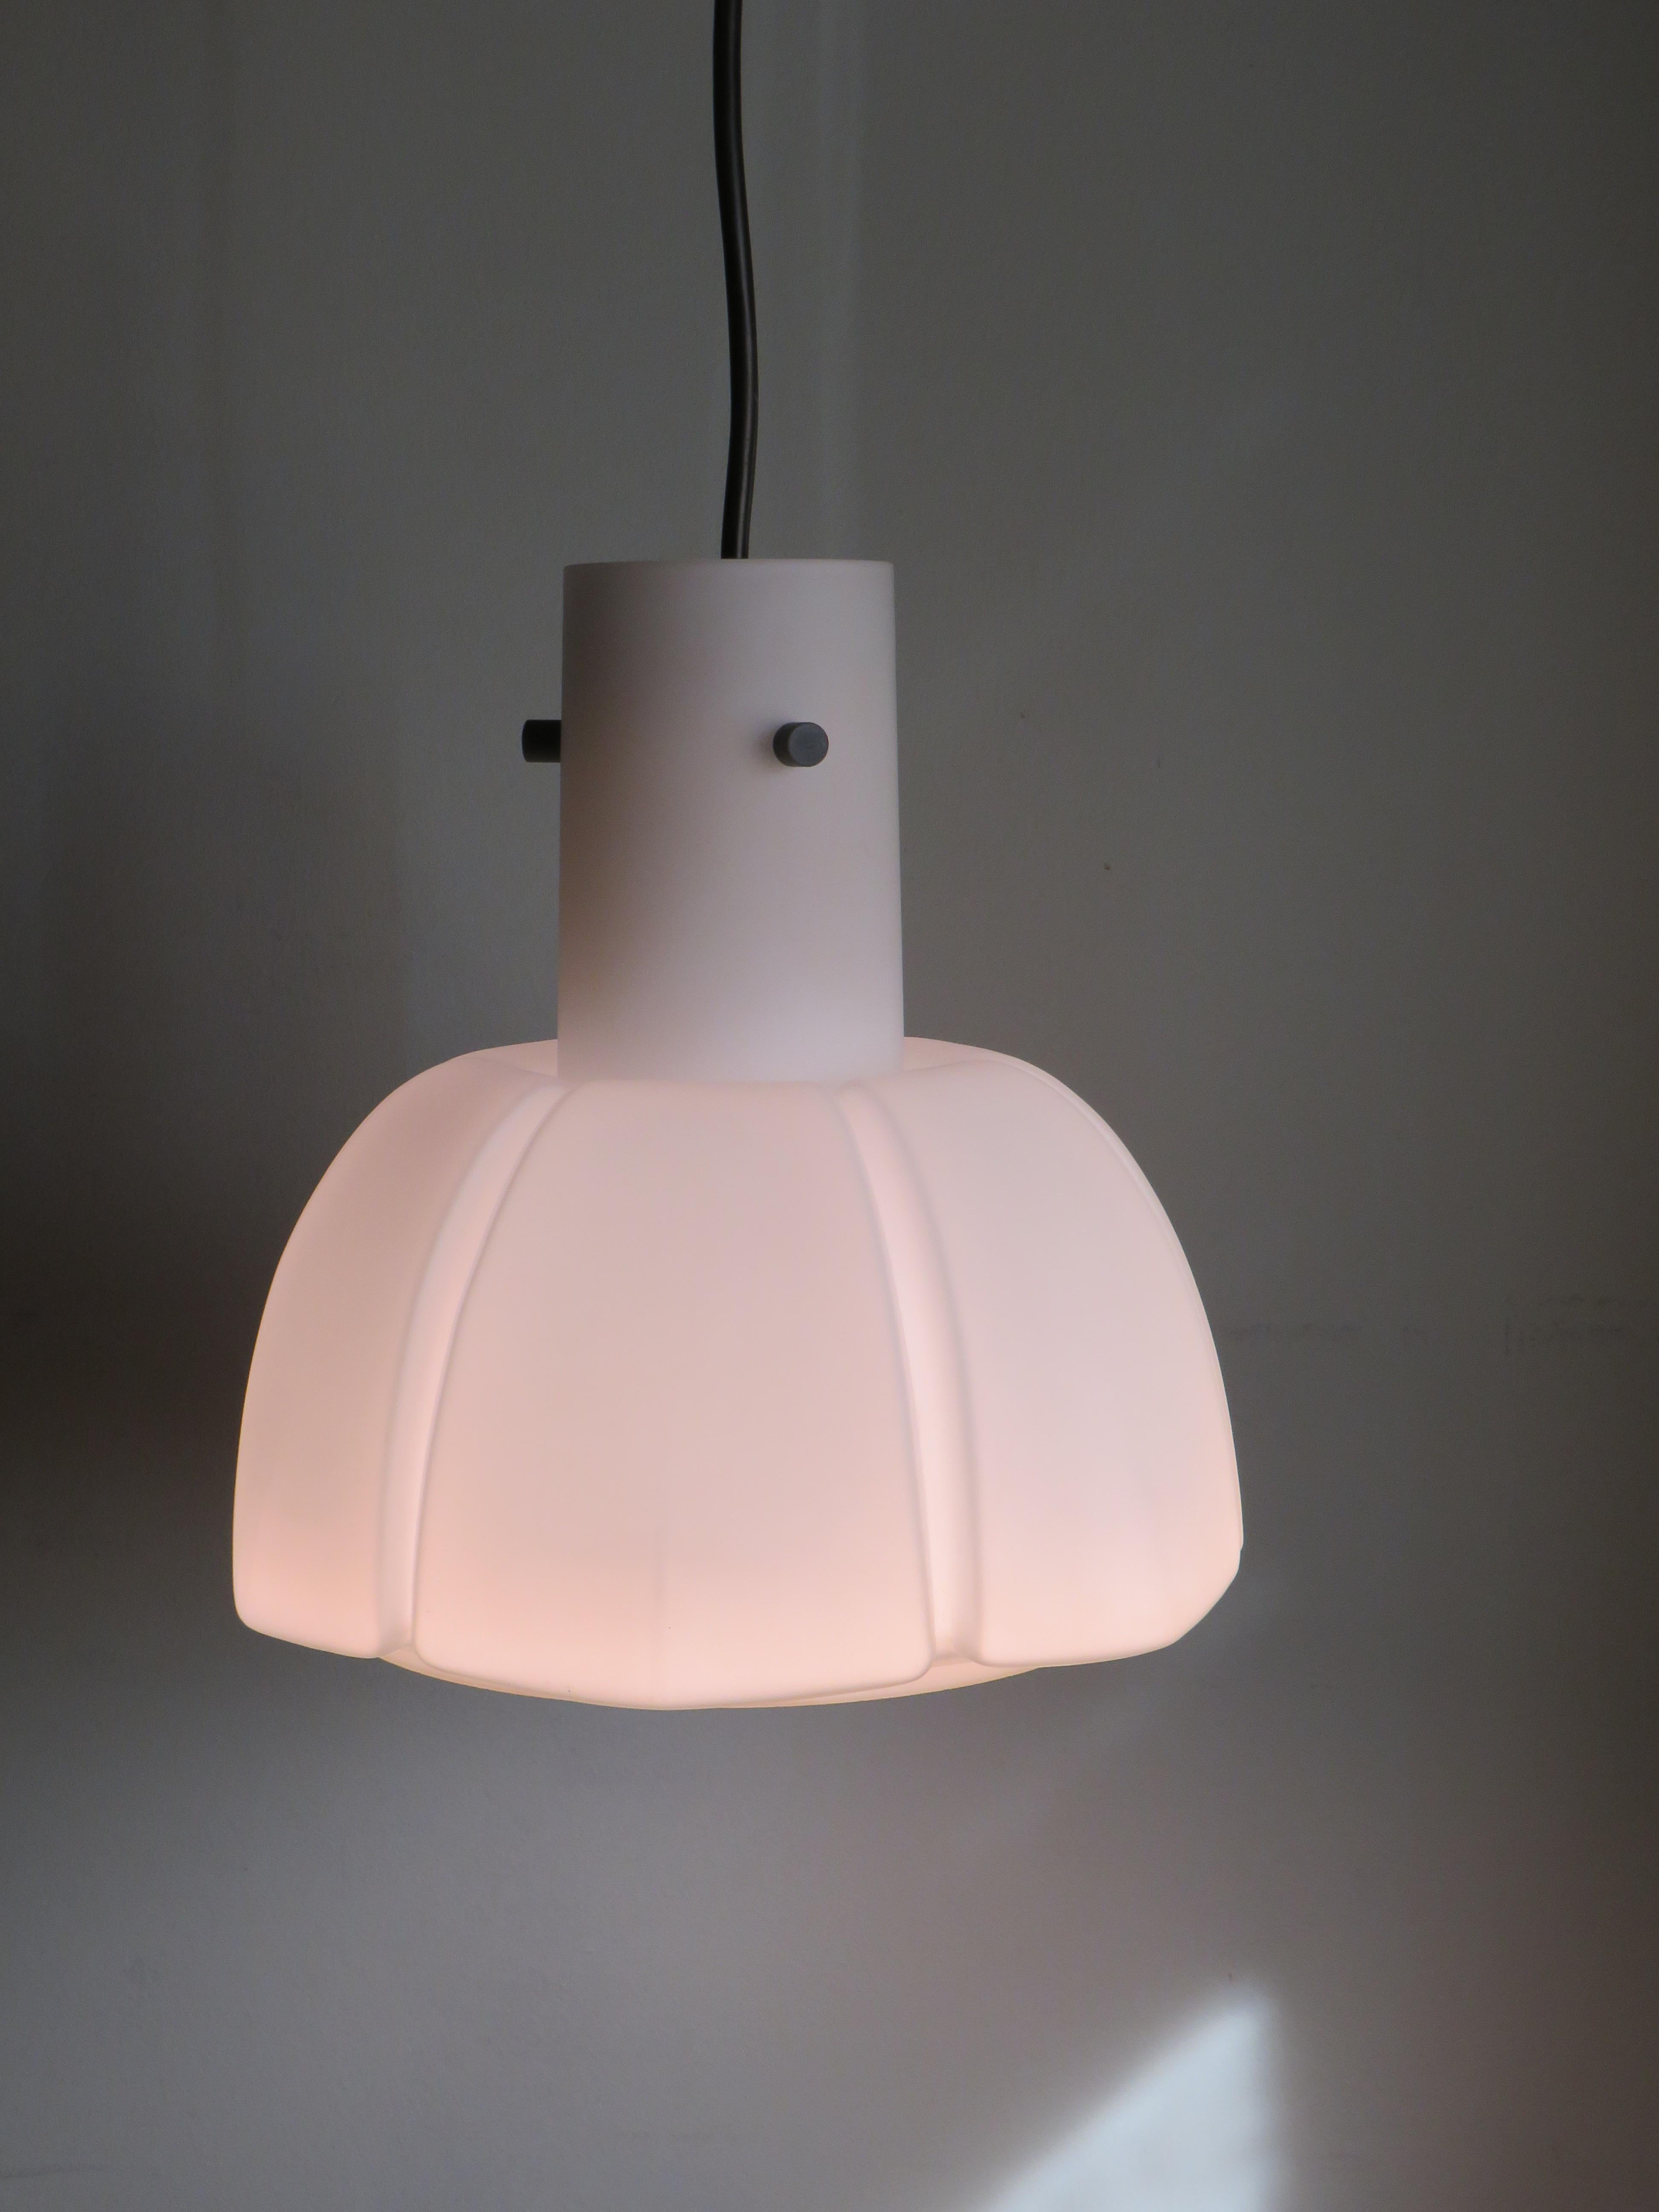 La lampe a une forme de calice en verre Opaline blanc épais et une douille métallique avec un raccord E 27, qui est fixée dans la lampe au moyen de 3 éléments métalliques.
La lampe est en parfait état et l'étiquette d'usine est présente.
La